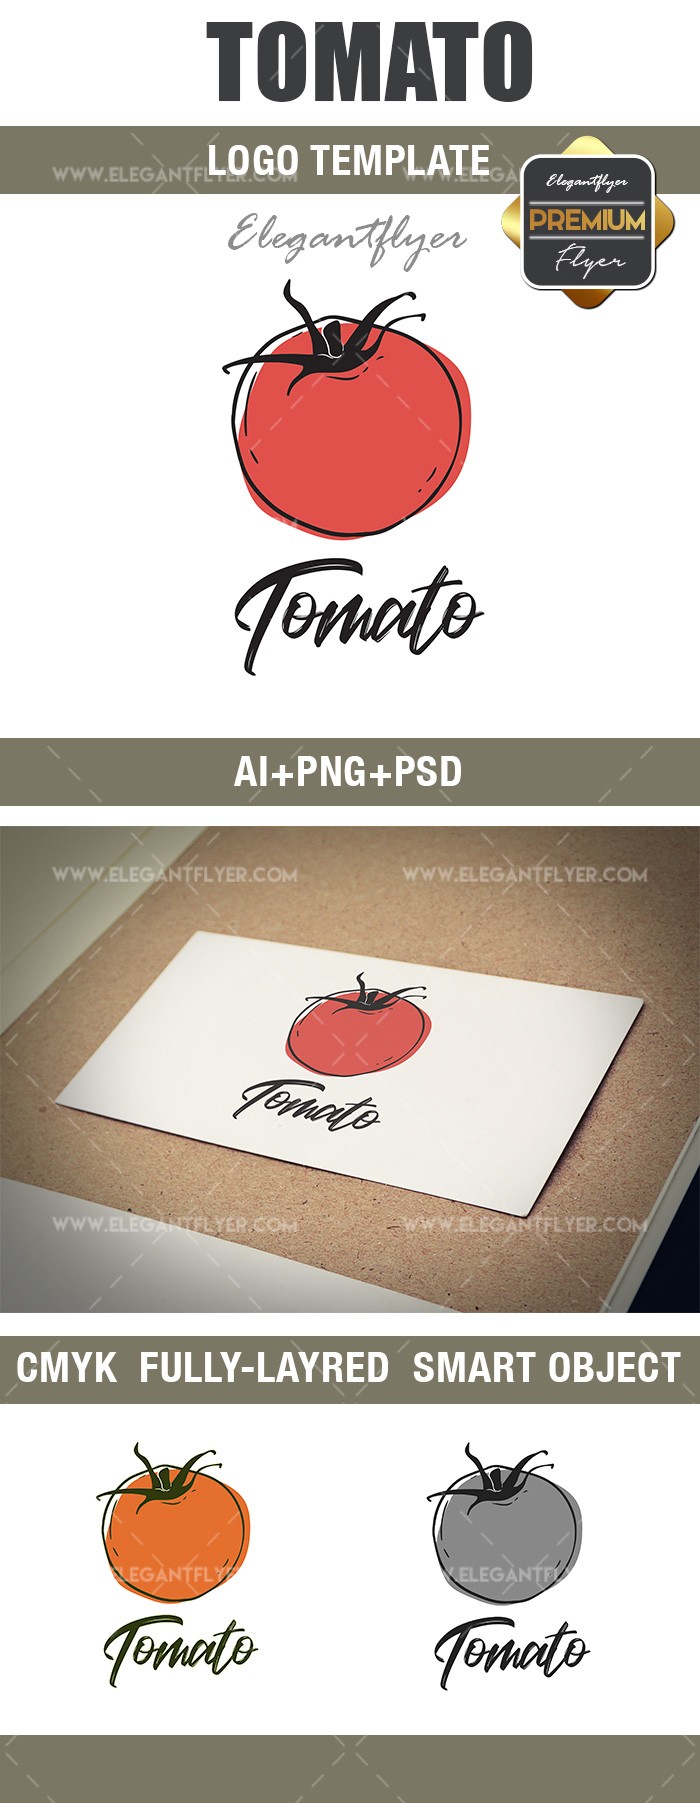 Tomato by ElegantFlyer